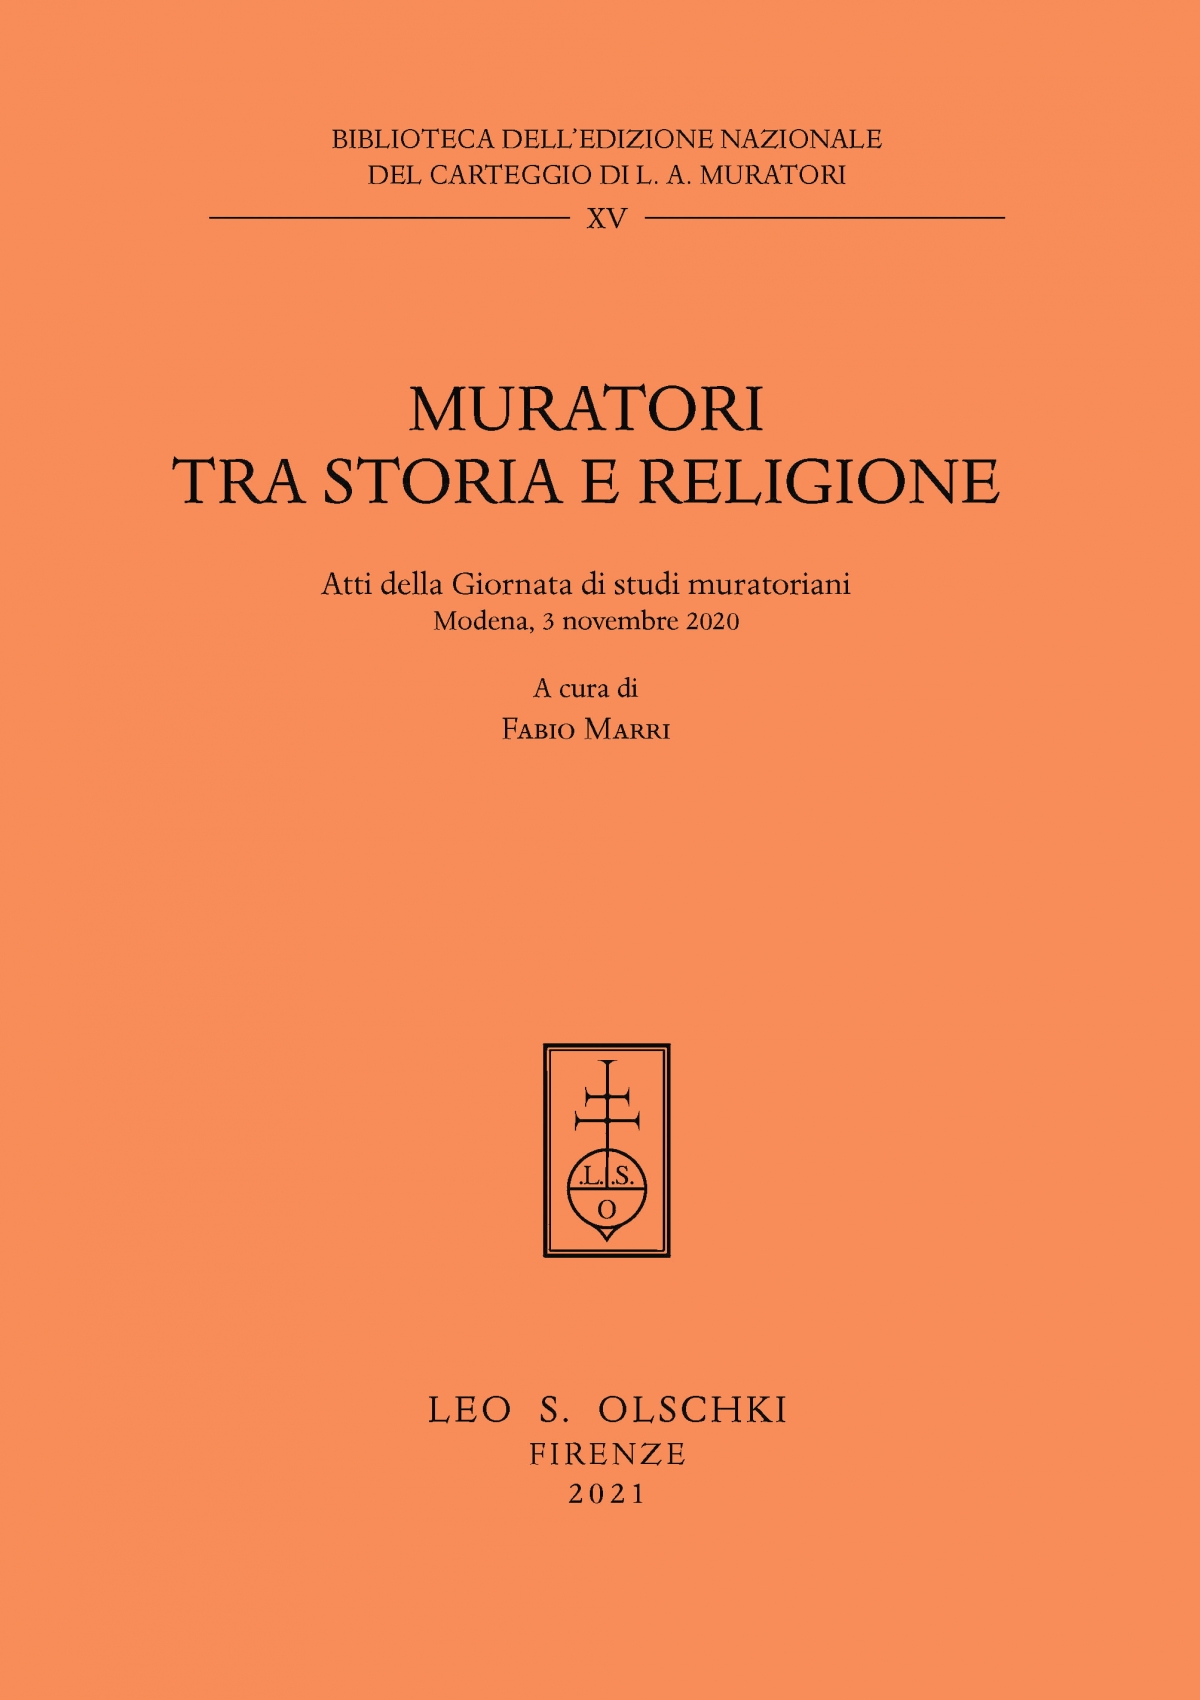 Muratori. Tra storia e religione